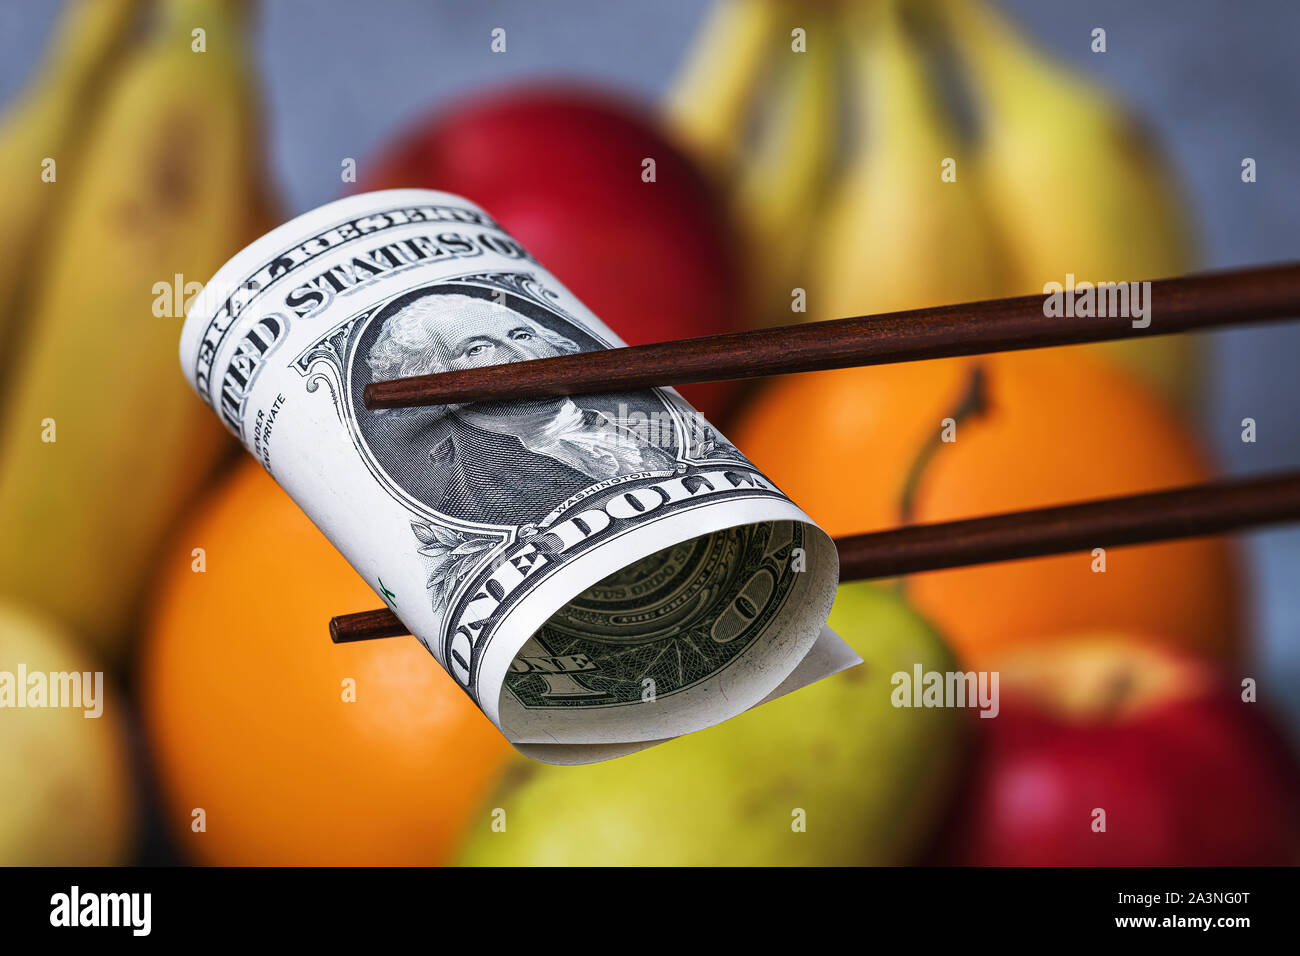 Chinese sticks halten einen Dollar auf einem Hintergrund von Obst. Konzept zum Thema der wirtschaftlichen Konfrontation zwischen Amerika und China. Essen Embargo Stockfoto